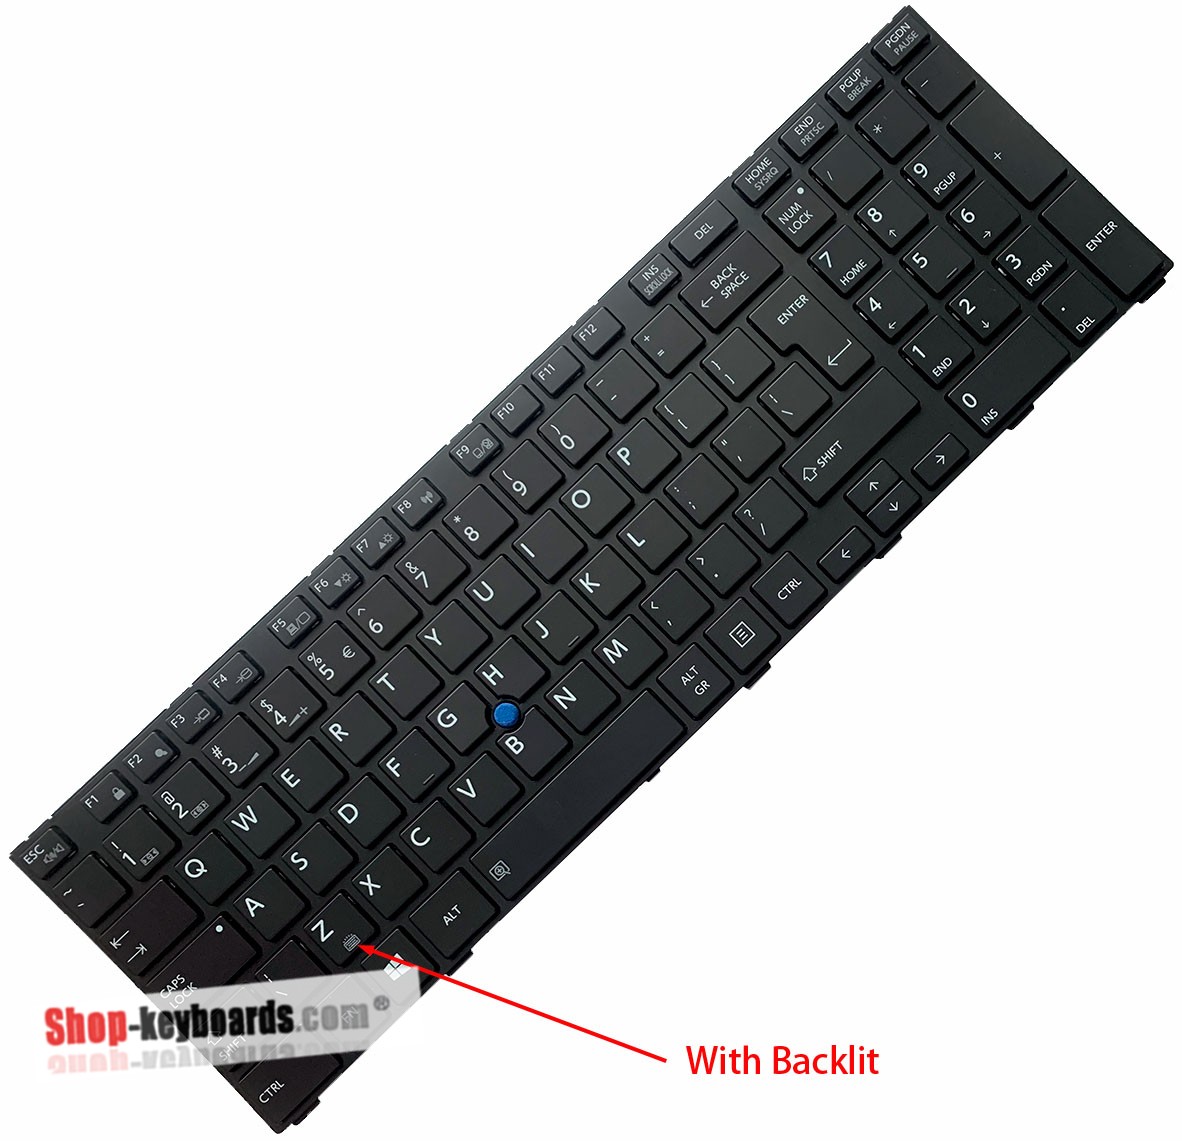 Toshiba MP-13F63U46356 Keyboard replacement